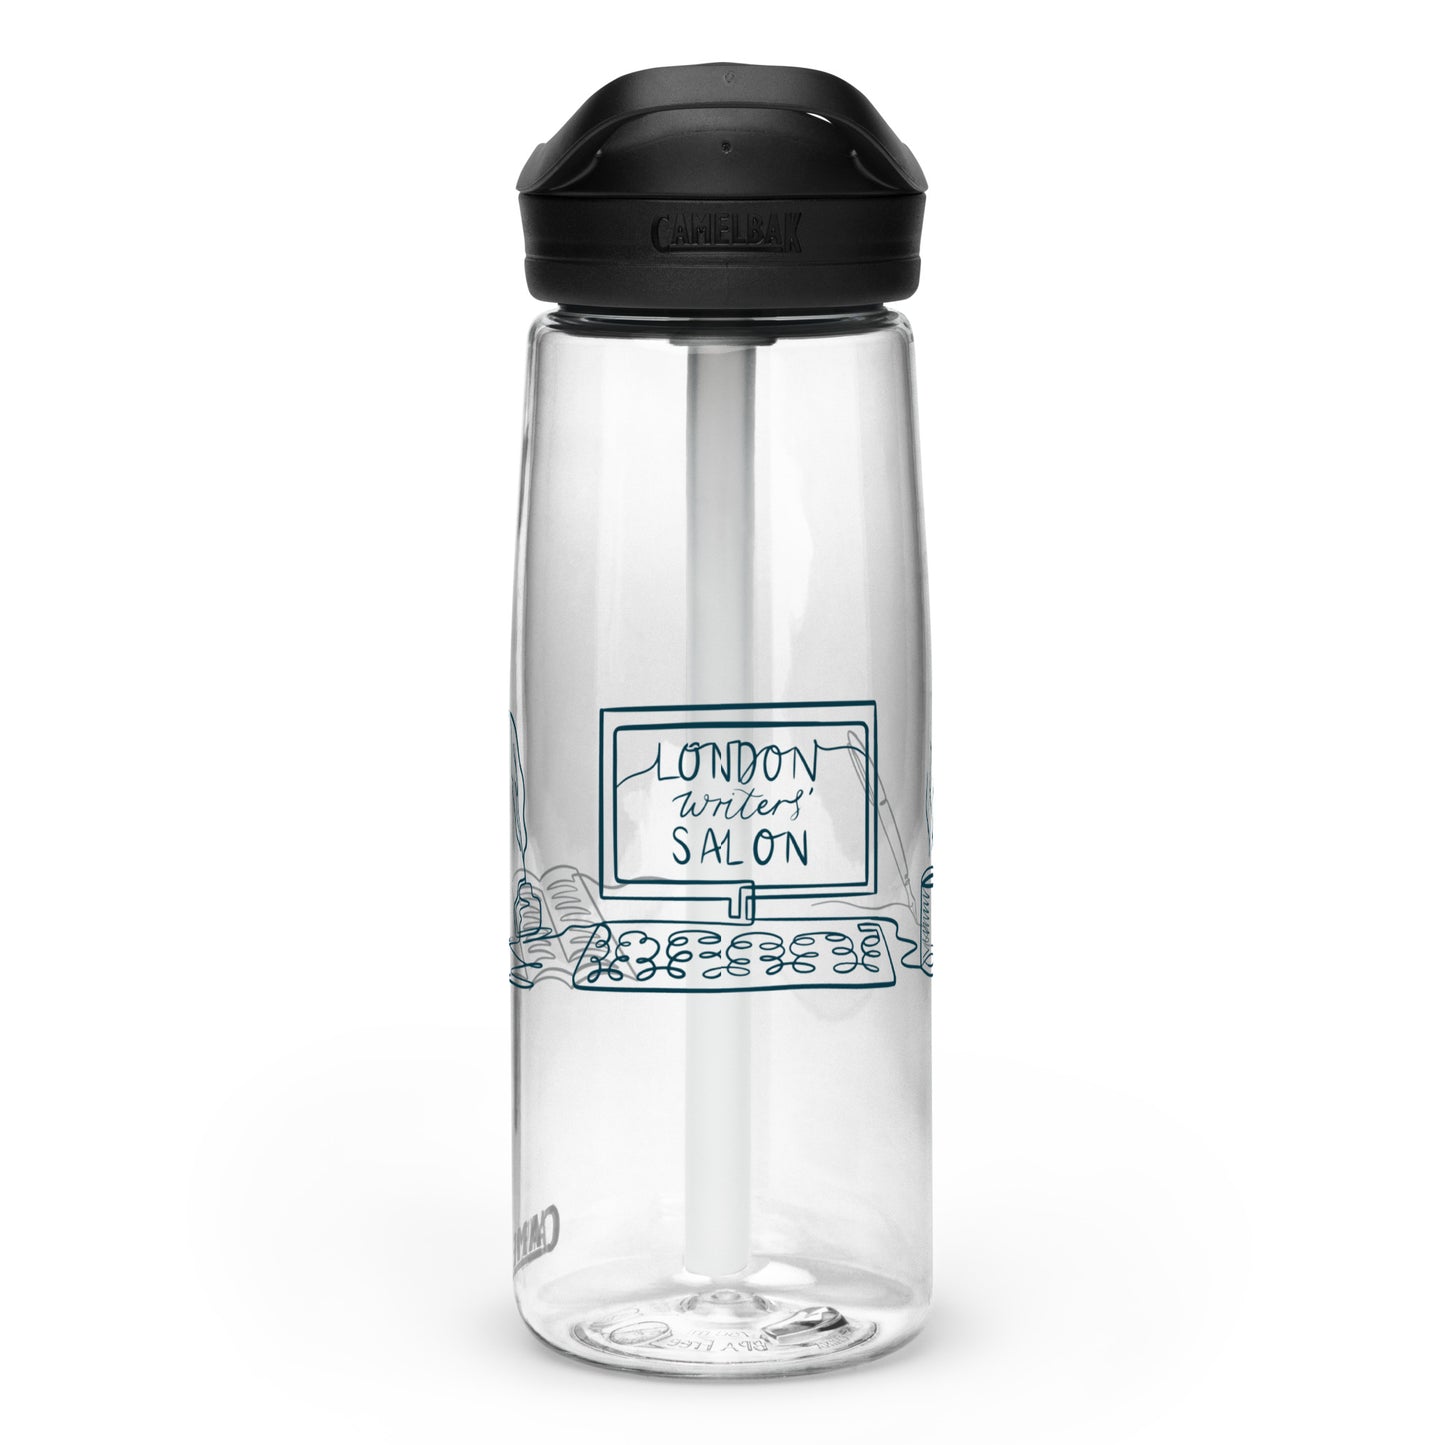 LWS Camelbak Water Bottle